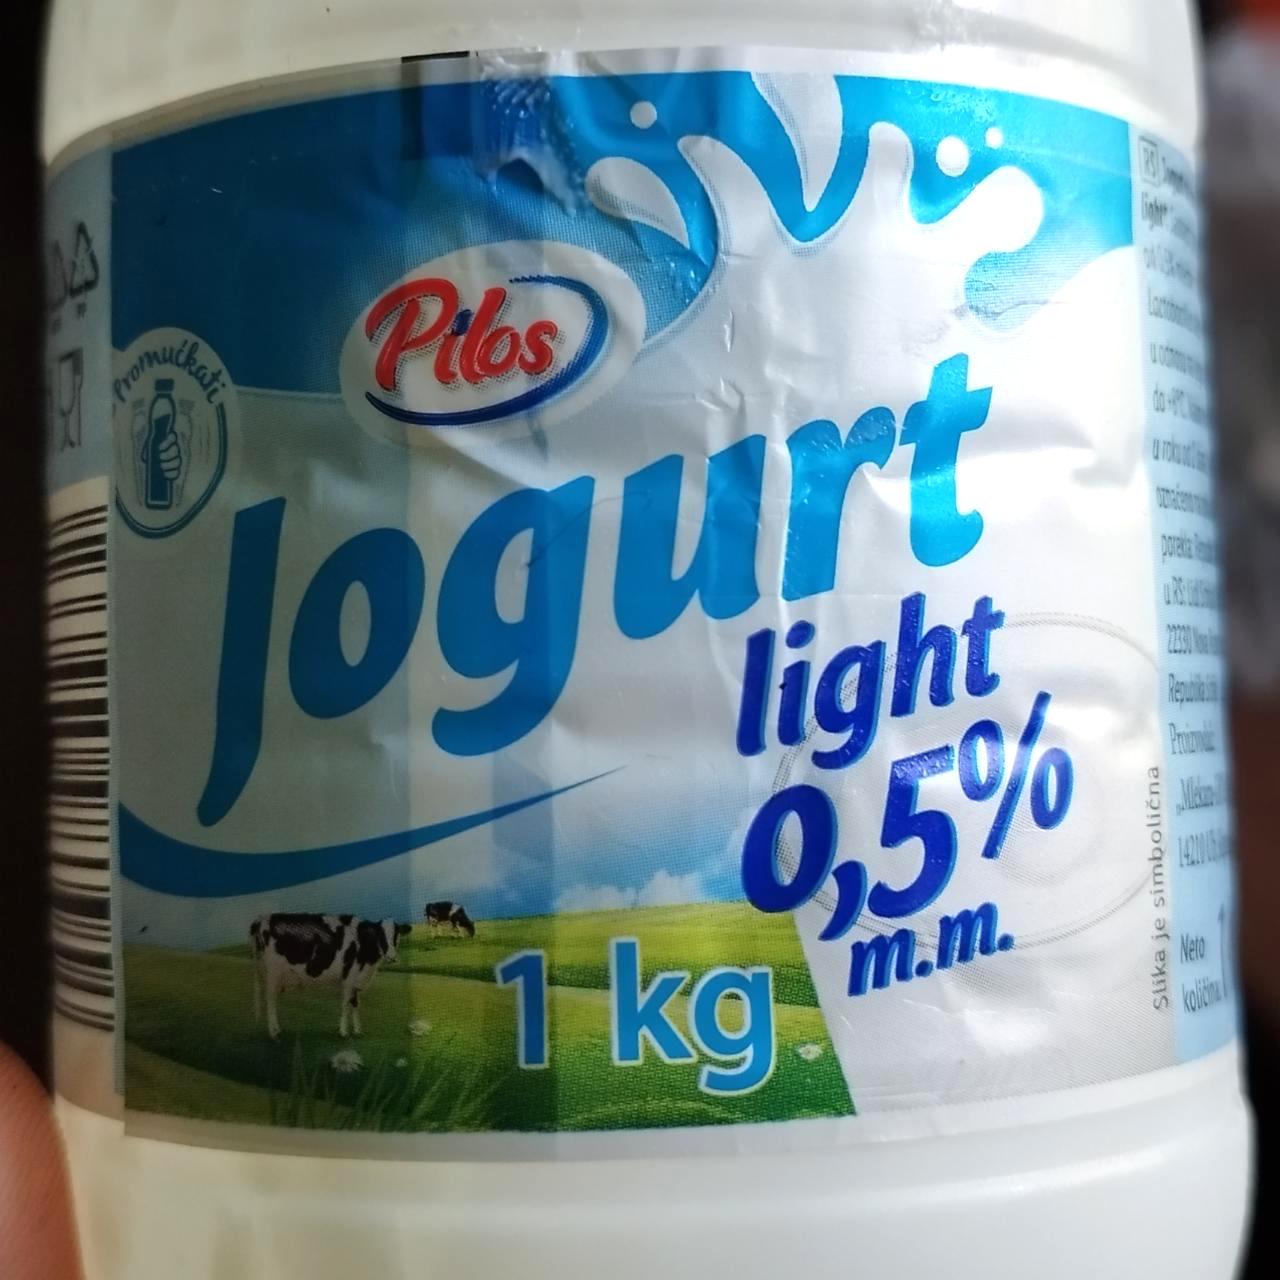 Képek - Joghurt light 0.5% Pilos